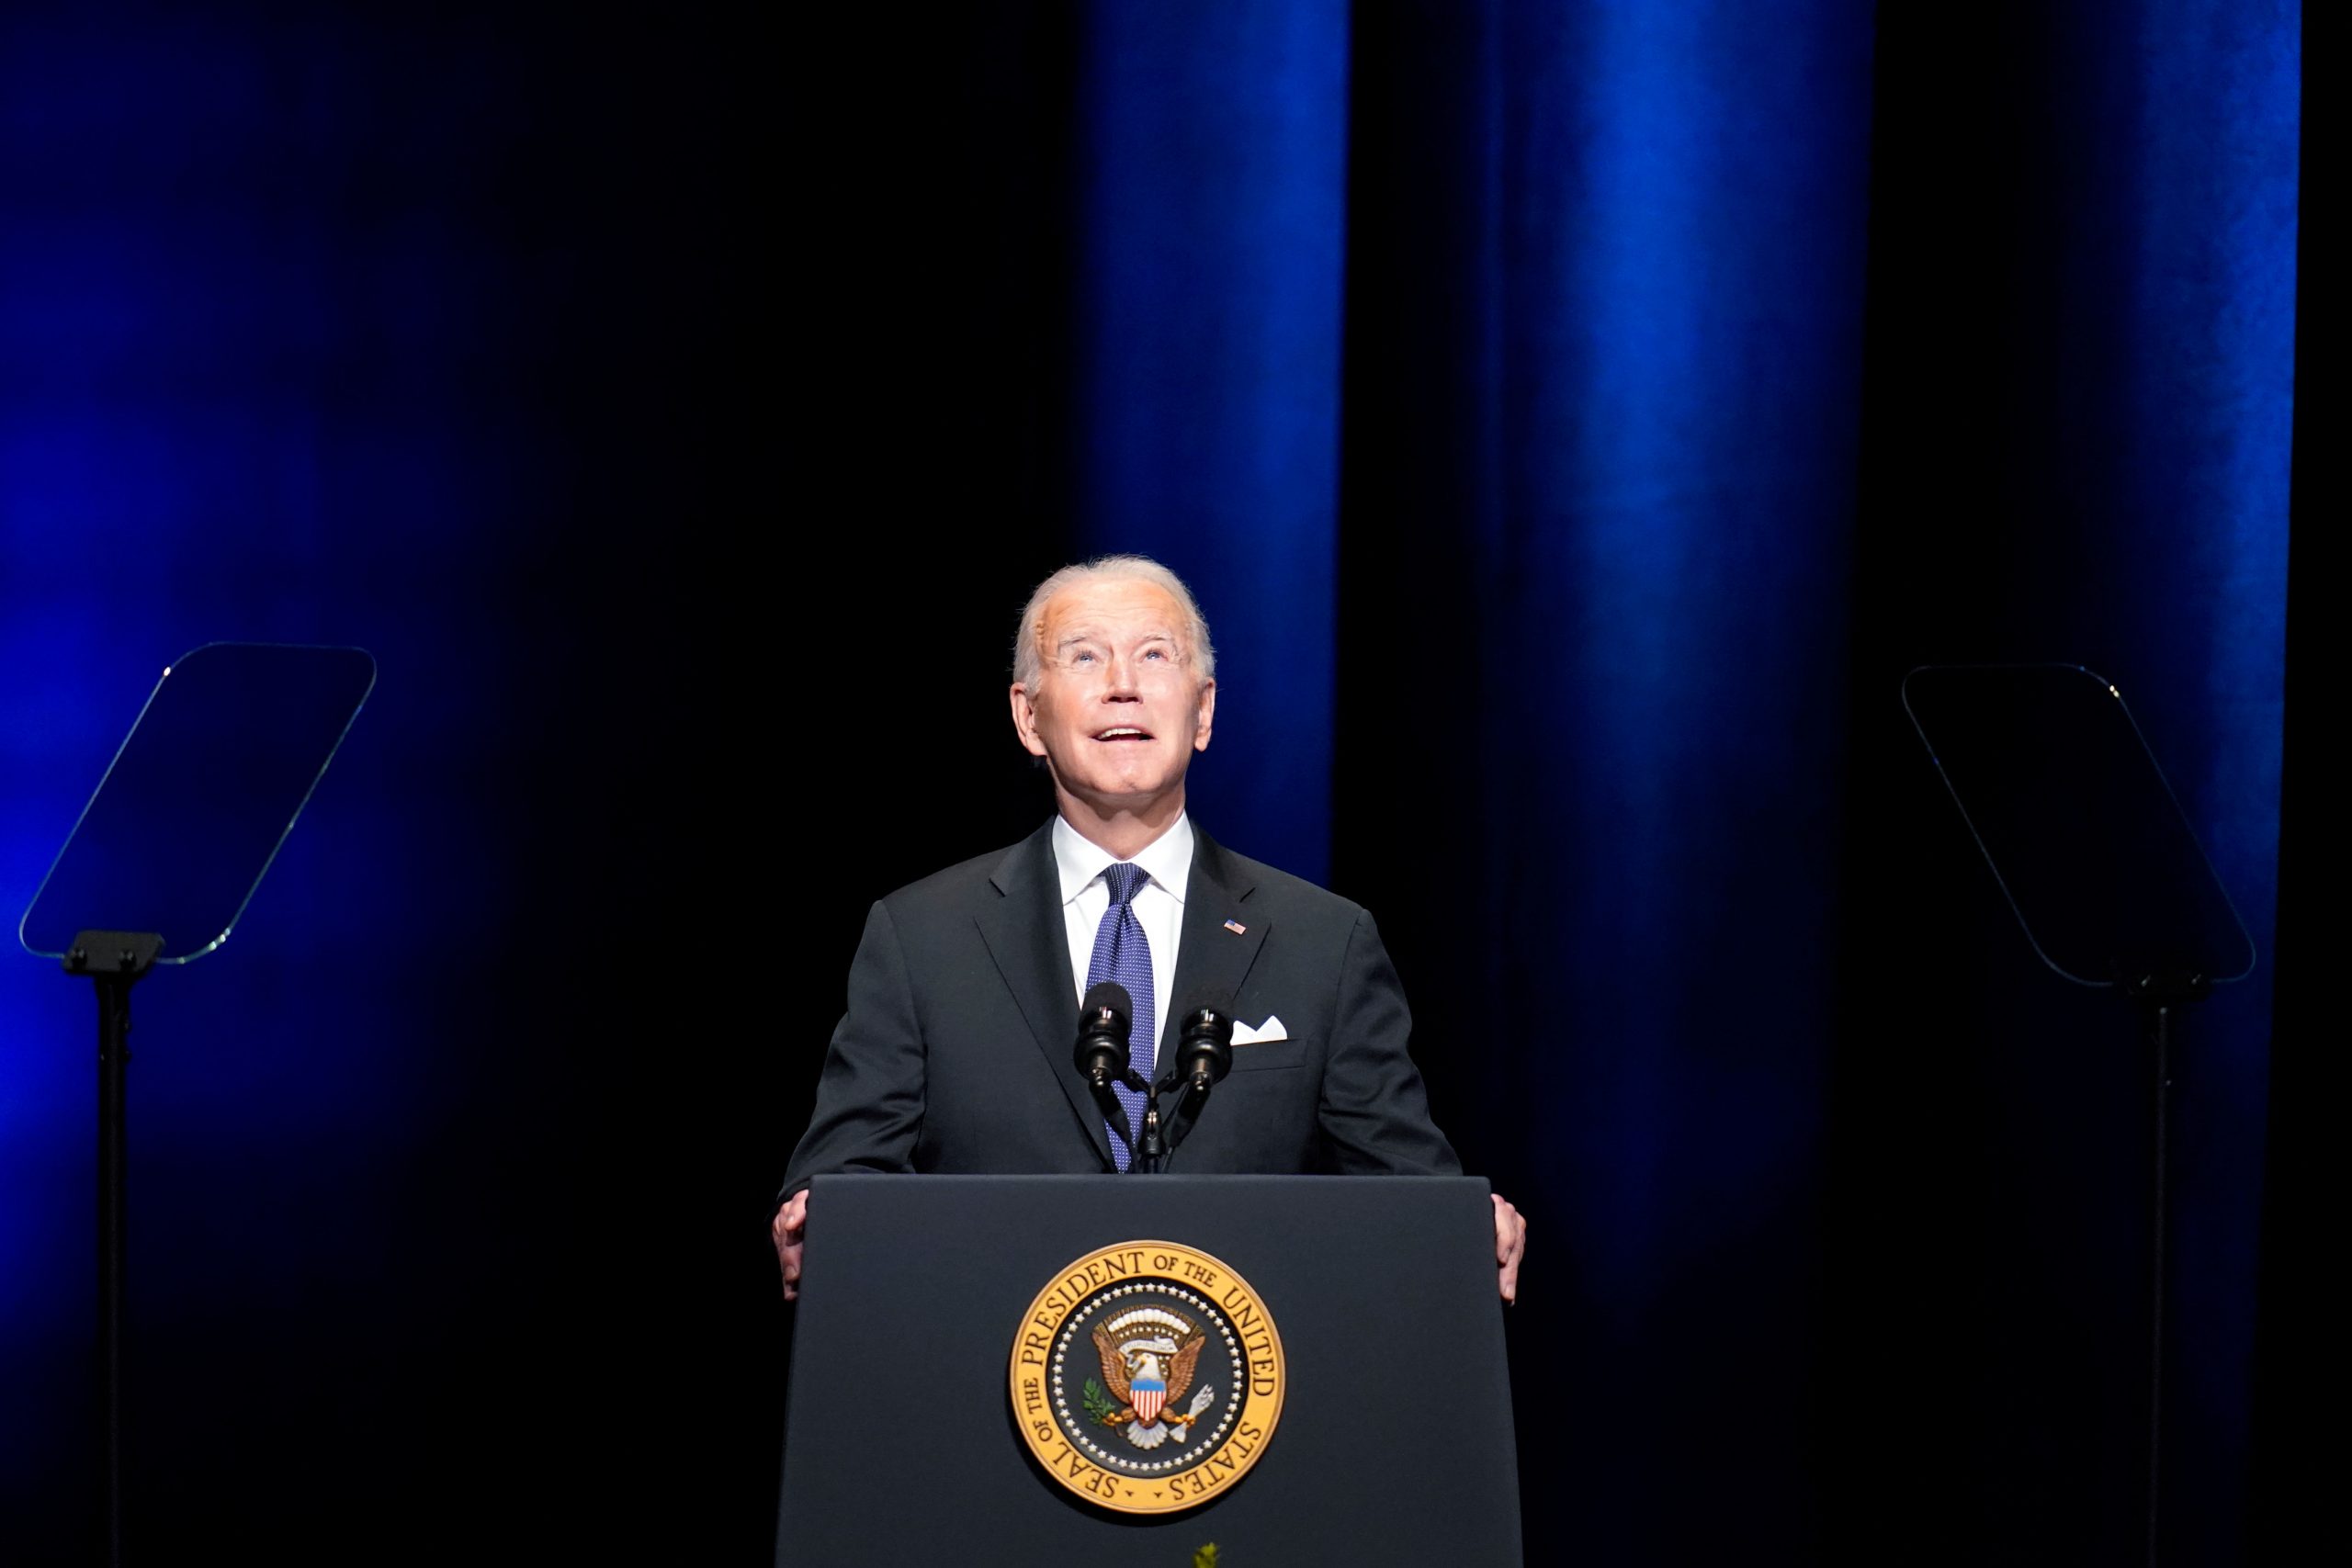 Joe Biden, Barack Obama honour late Senate Majority Leader Harry Reid at memorial